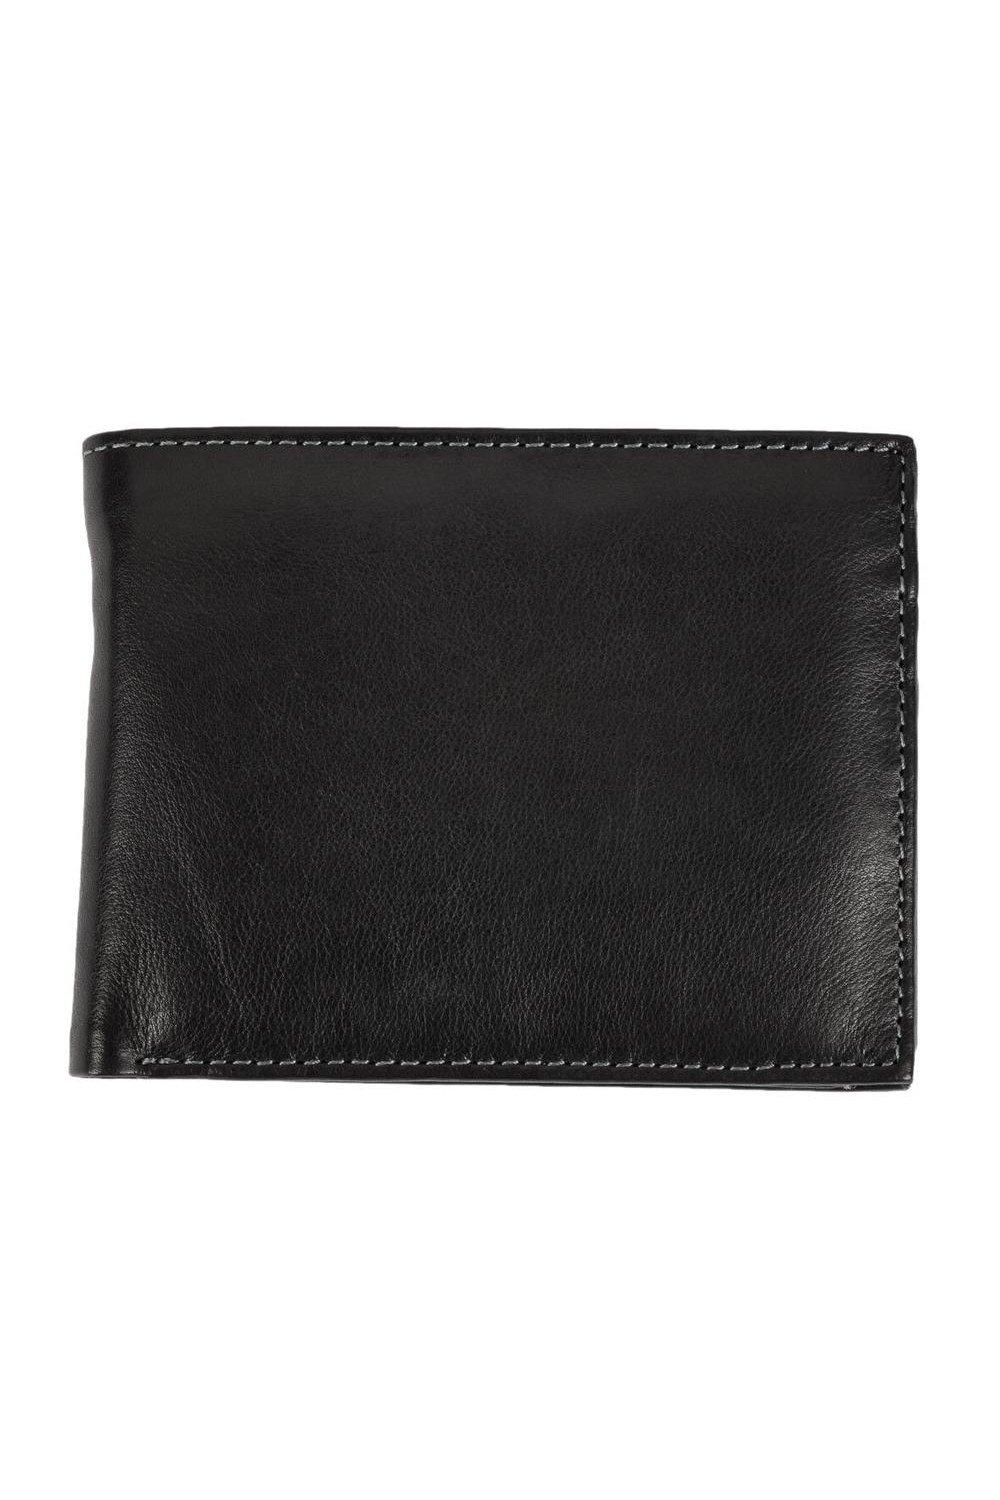 Кошелек Mark Trifold с карманом для монет Eastern Counties Leather, черный кошелек для монет бетси eastern counties leather красный